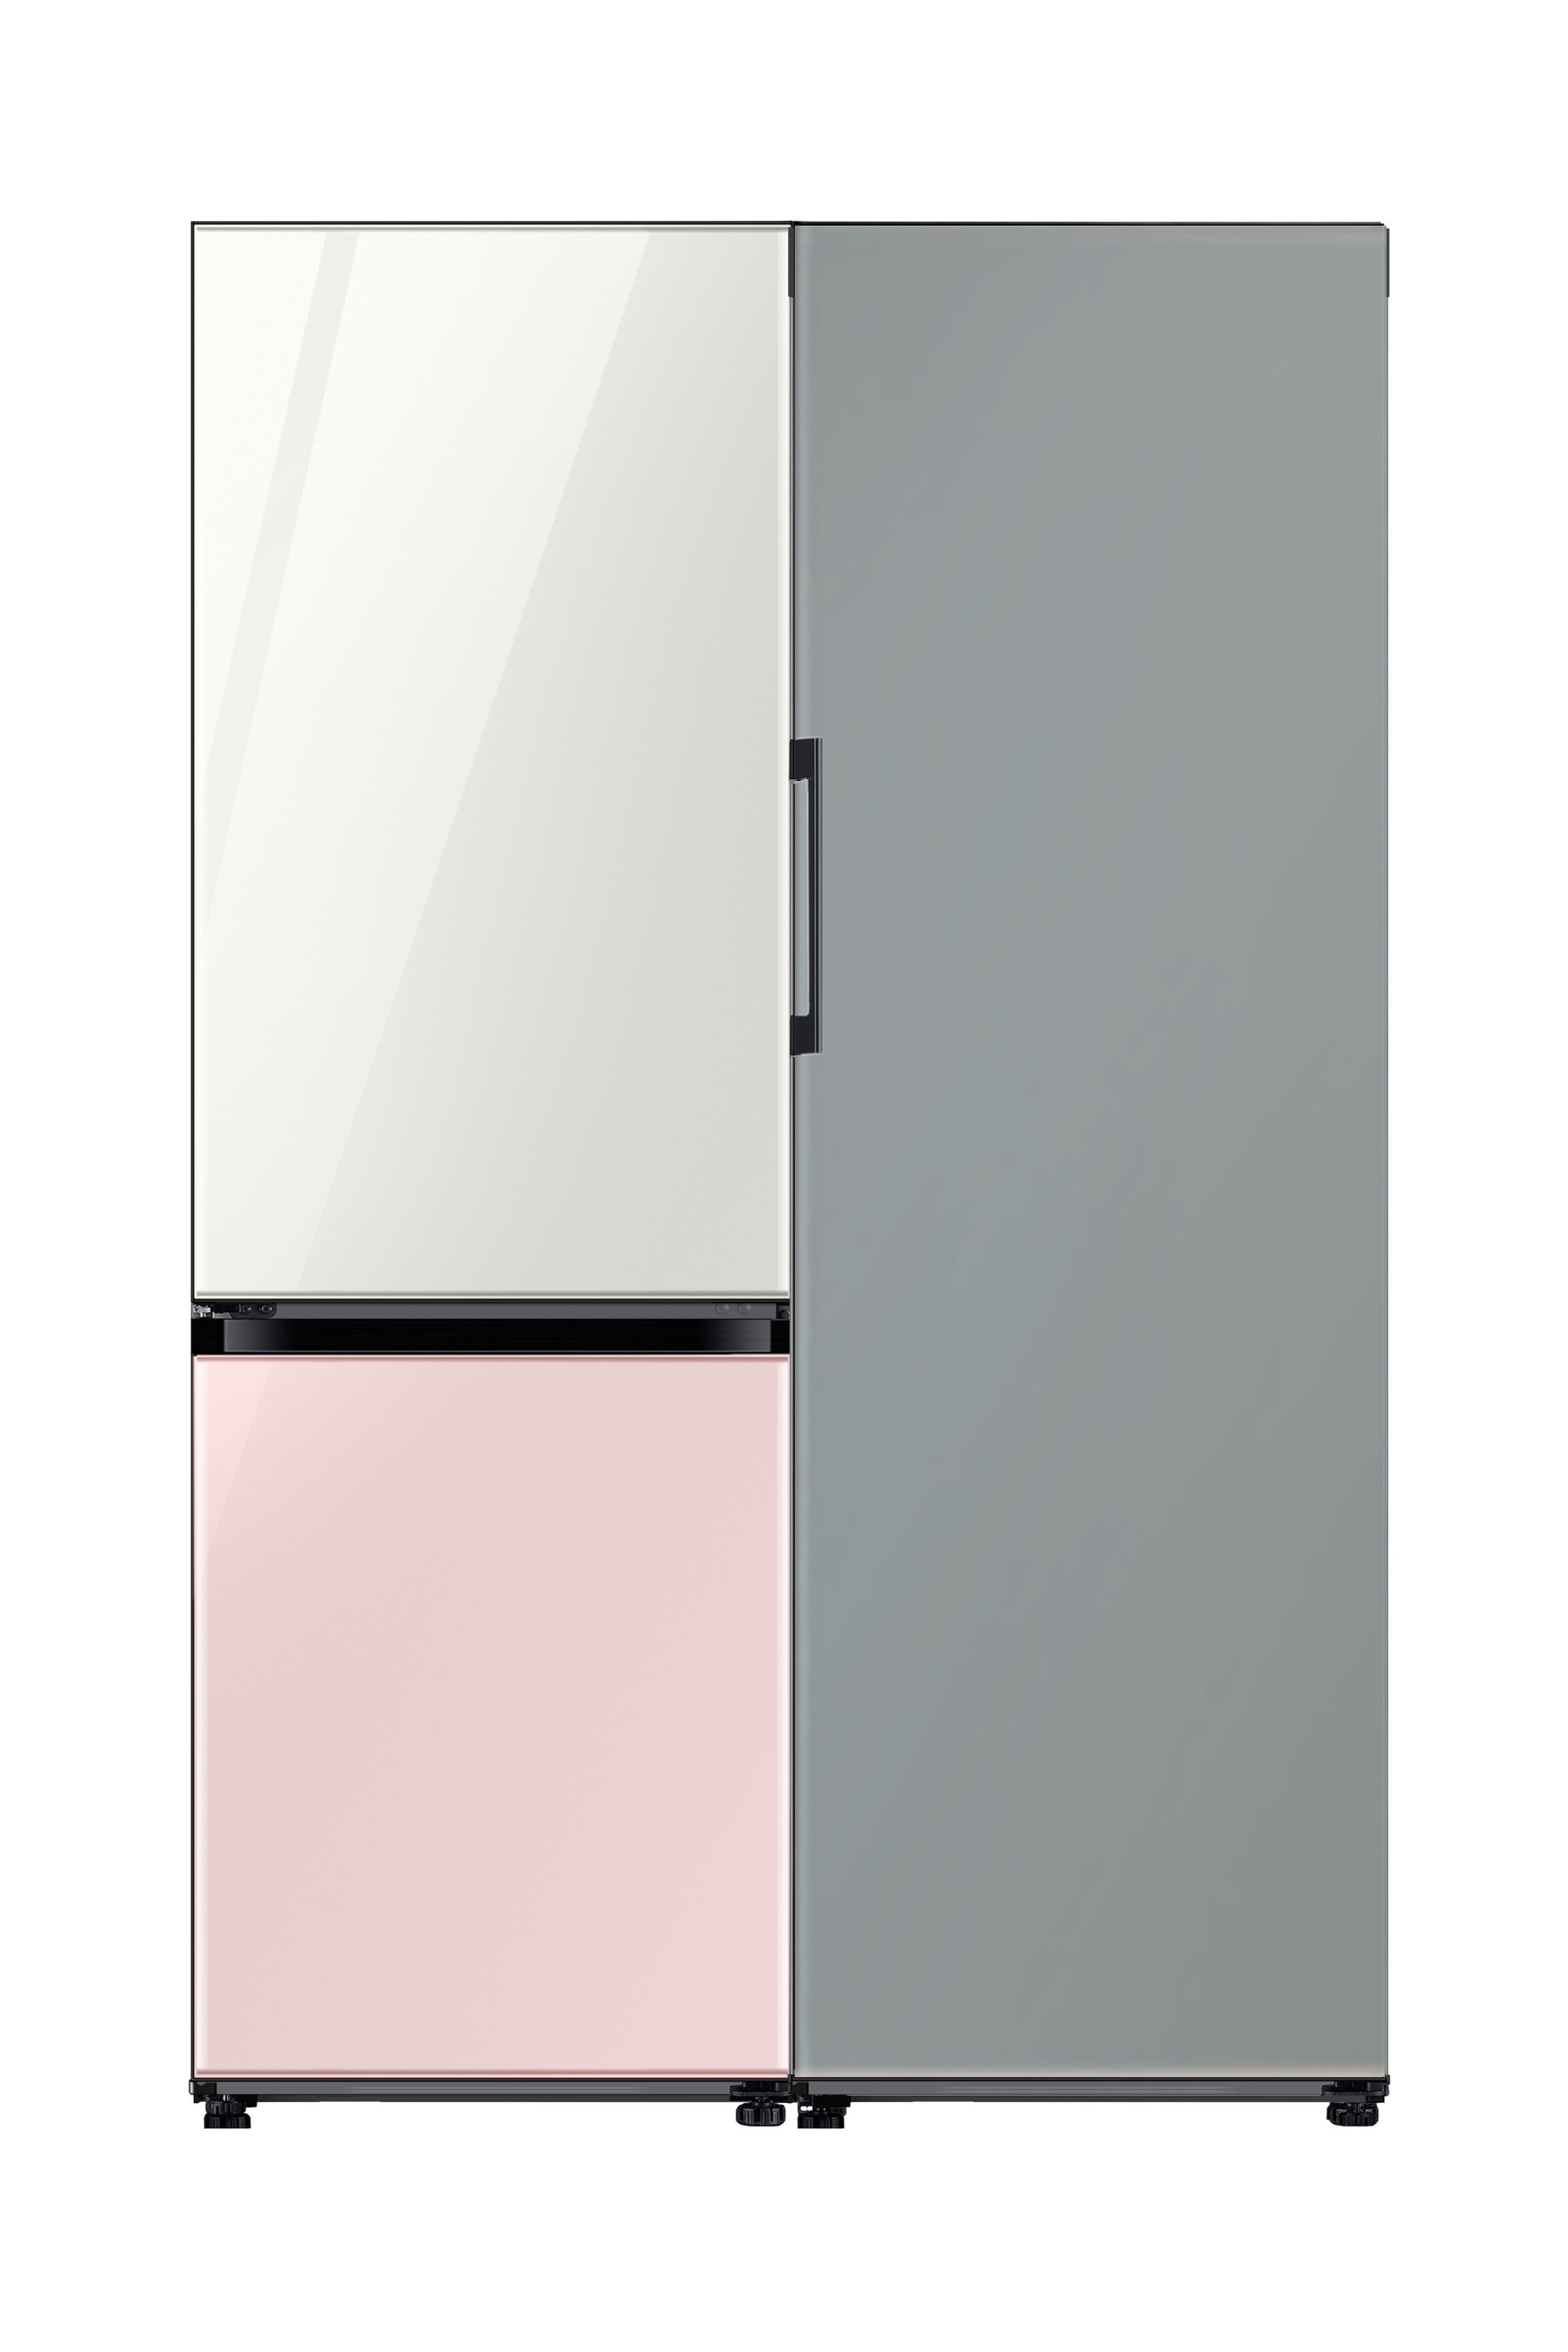 BESPOKE Refrigerator 2 Door (Top Glam White Bottom Glam Pink) + 1 Door (Satin Gray) Combination